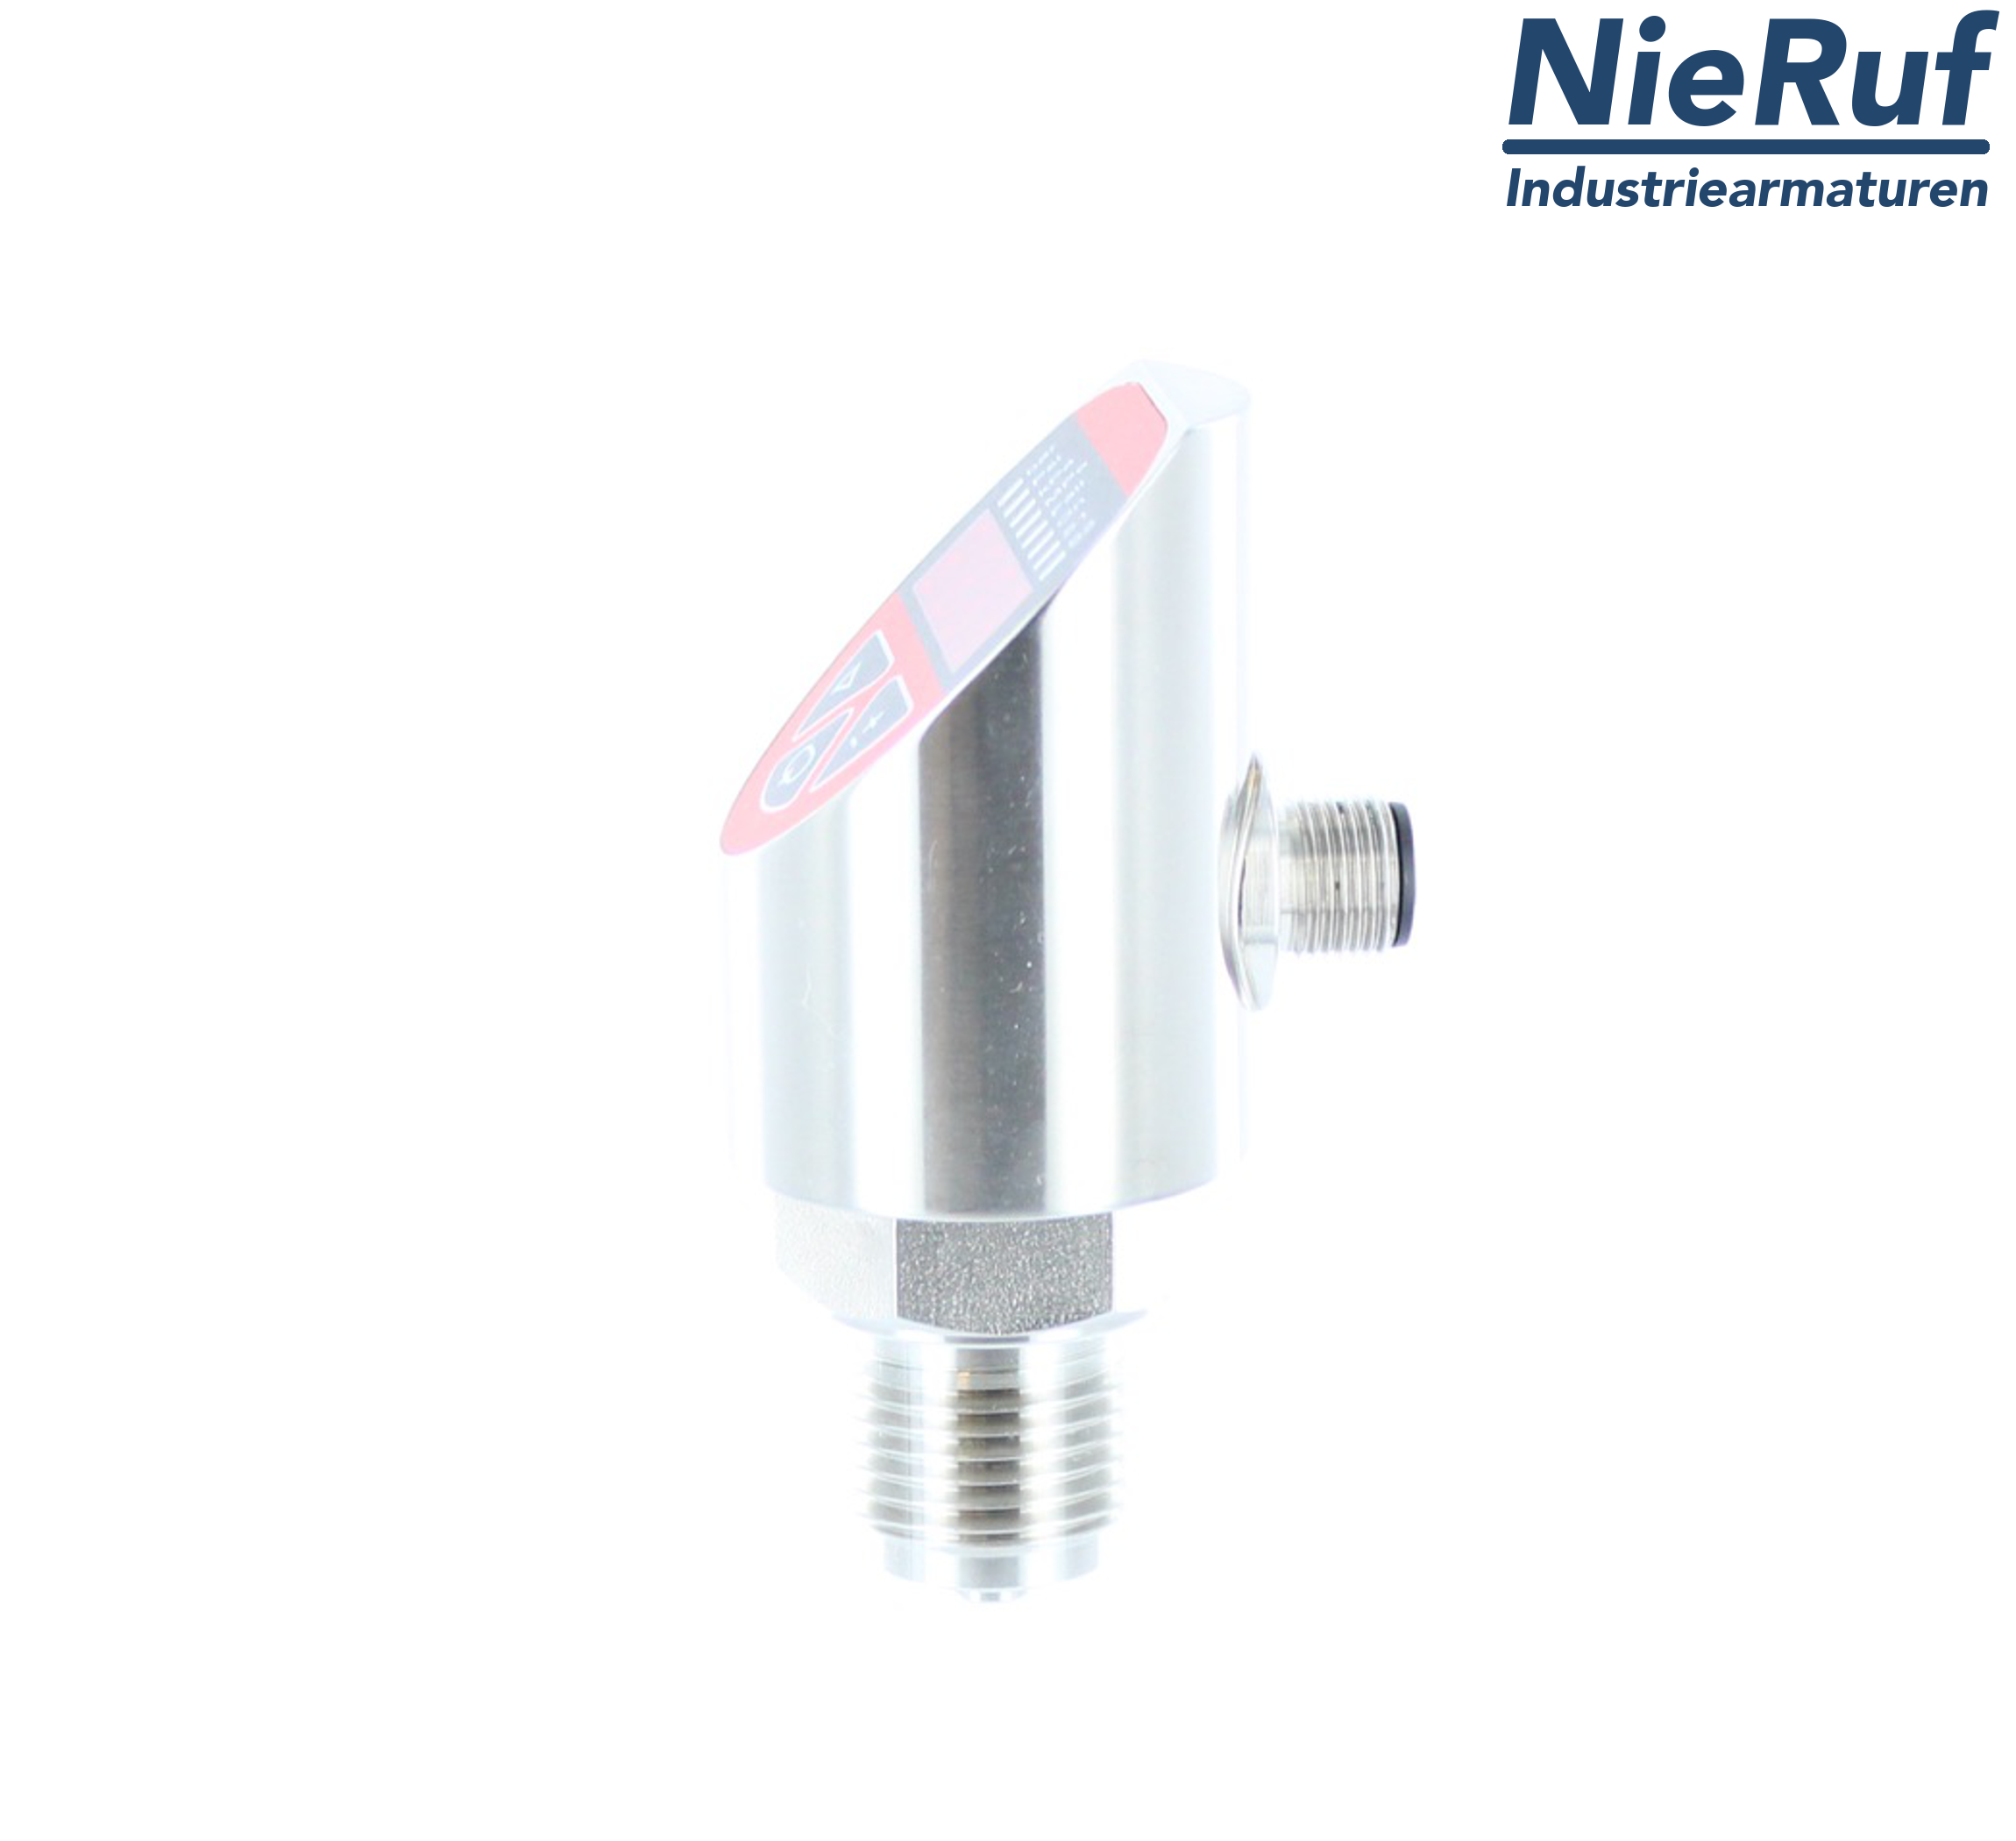 digital pressure sensor G 1/2" B IB 4-wire: 1xPNP, 1x4 - 20mA, Desina FPM 0,0 - 10,0 bar